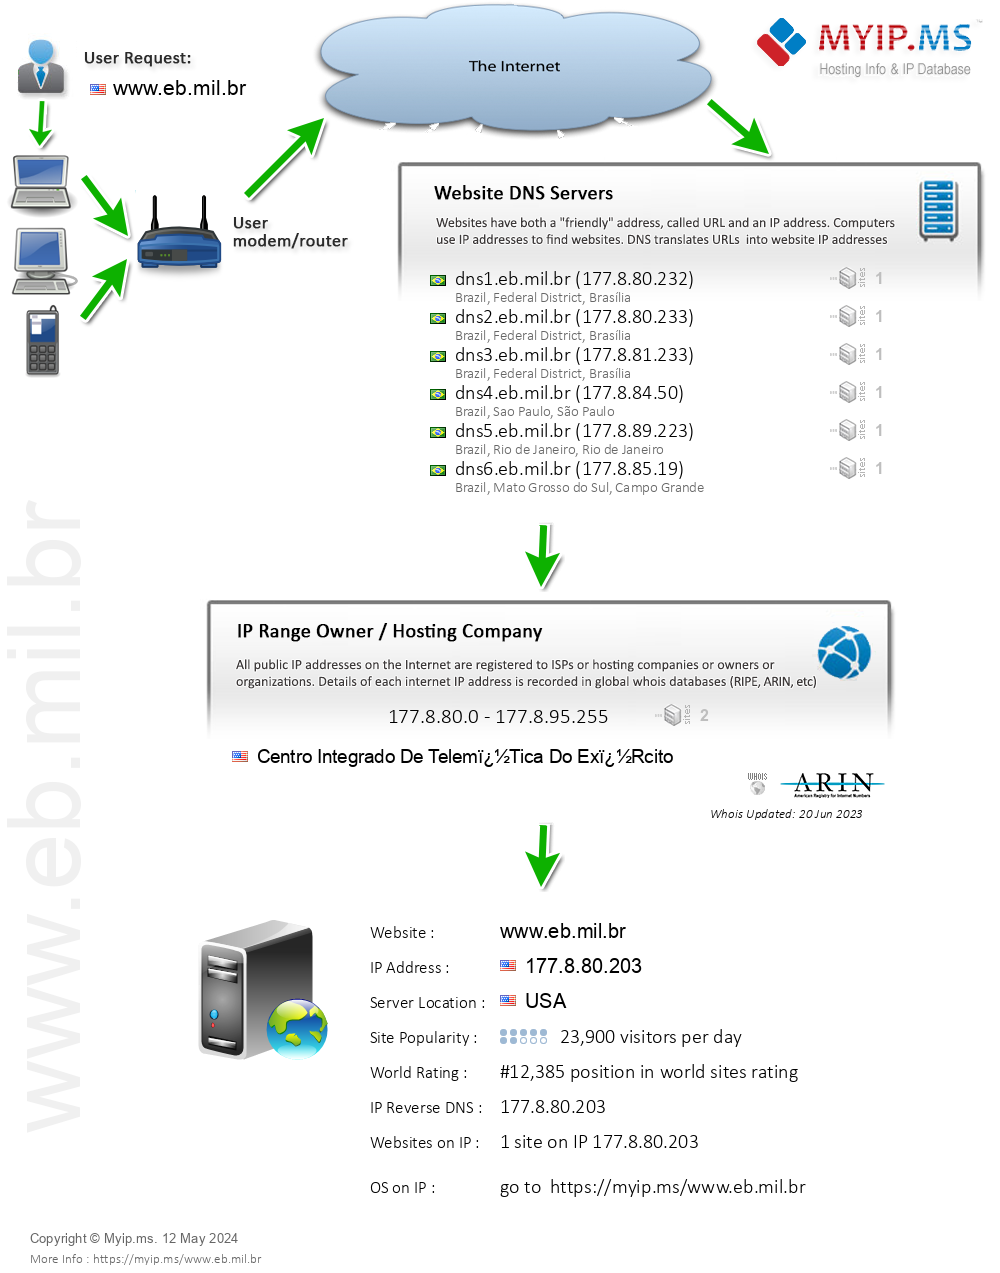 Eb.mil.br - Website Hosting Visual IP Diagram